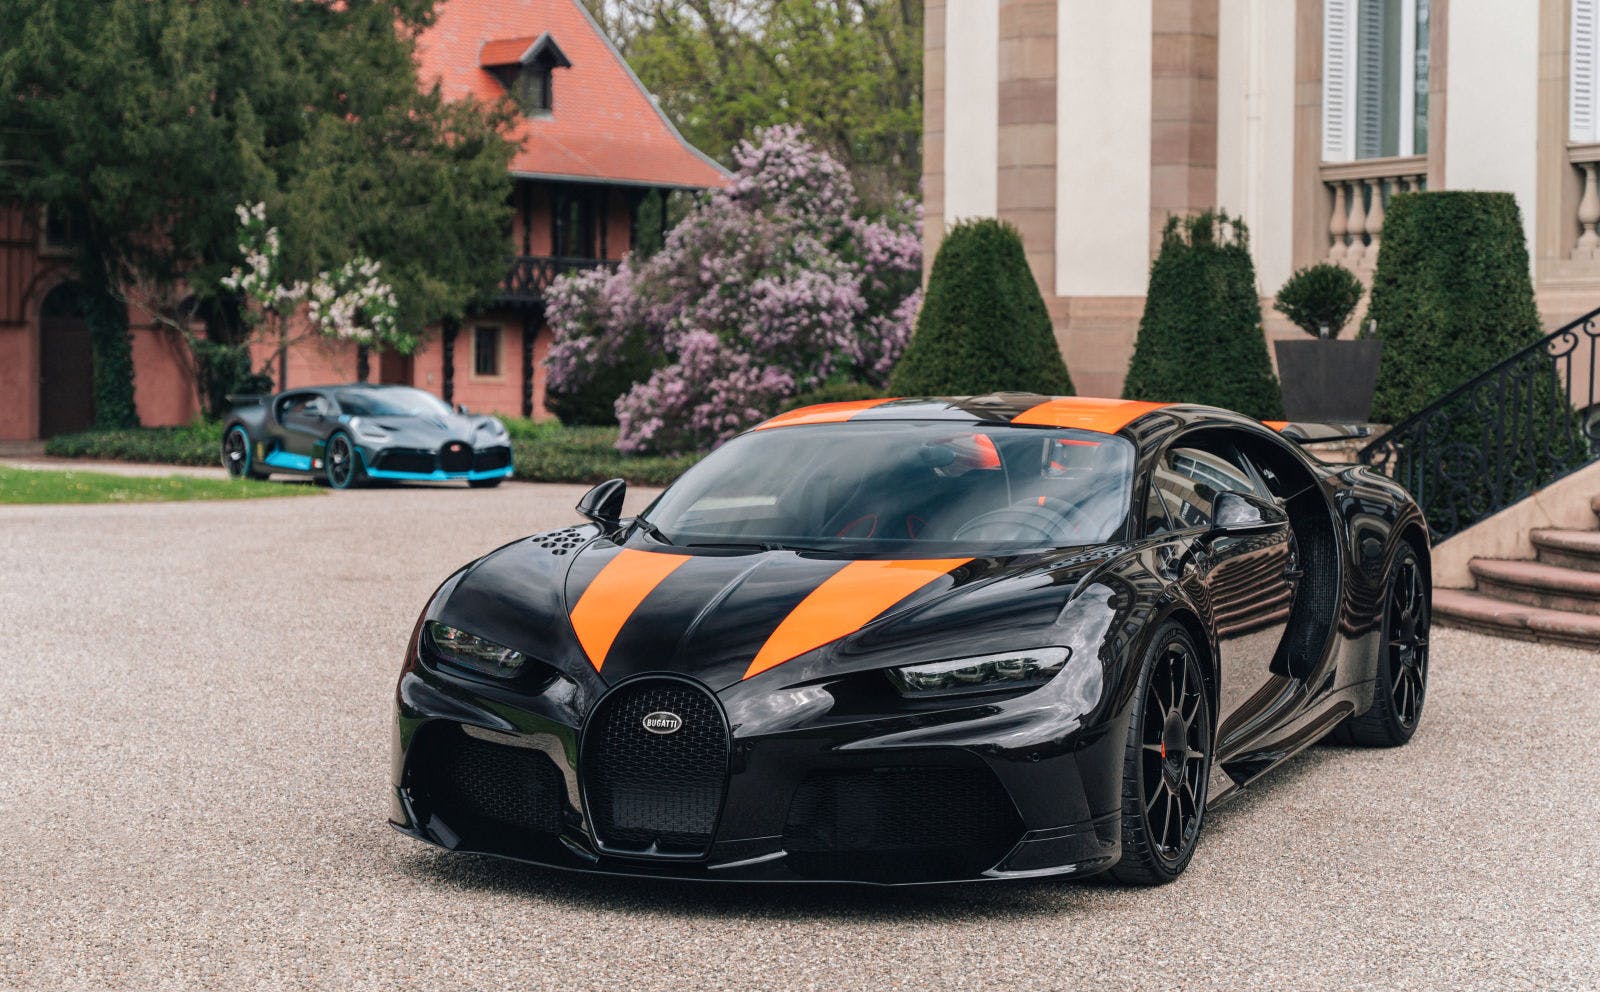 La Bugatti Chiron Super Sport 300+, détentrice d’un record du monde de vitesse enregistré à 490,48 km/h en 2019.
